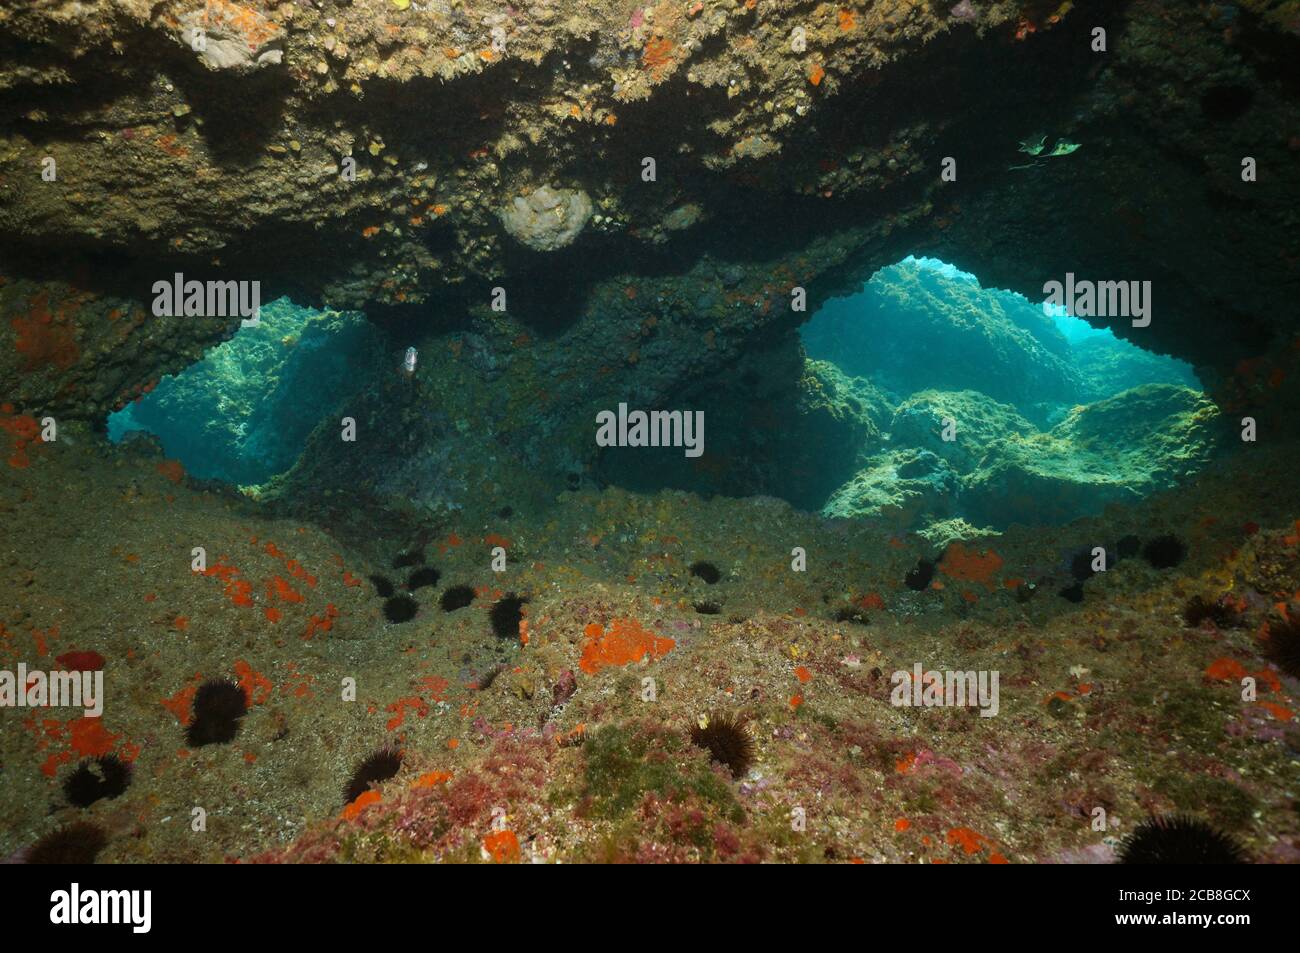 Aberturas dentro de una cueva submarina en el mar Mediterráneo, España, Costa Brava, Cataluña Foto de stock